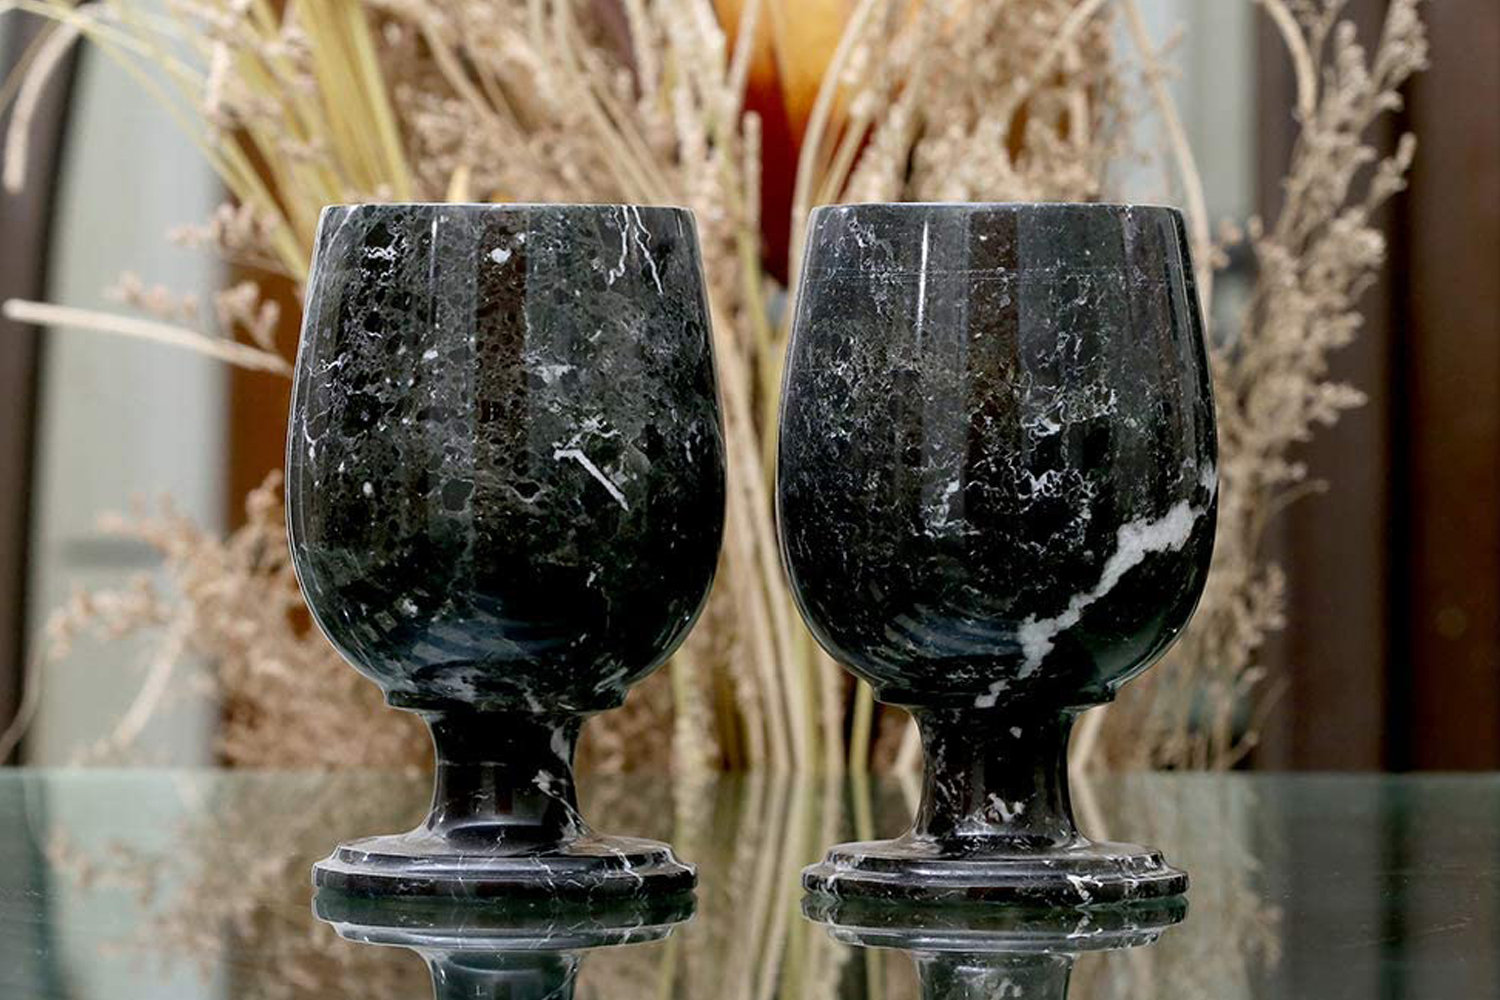 Large Square Wine Glasses Set of 4 Crystal,18oz Clear Cylinder 4Pack -18oz